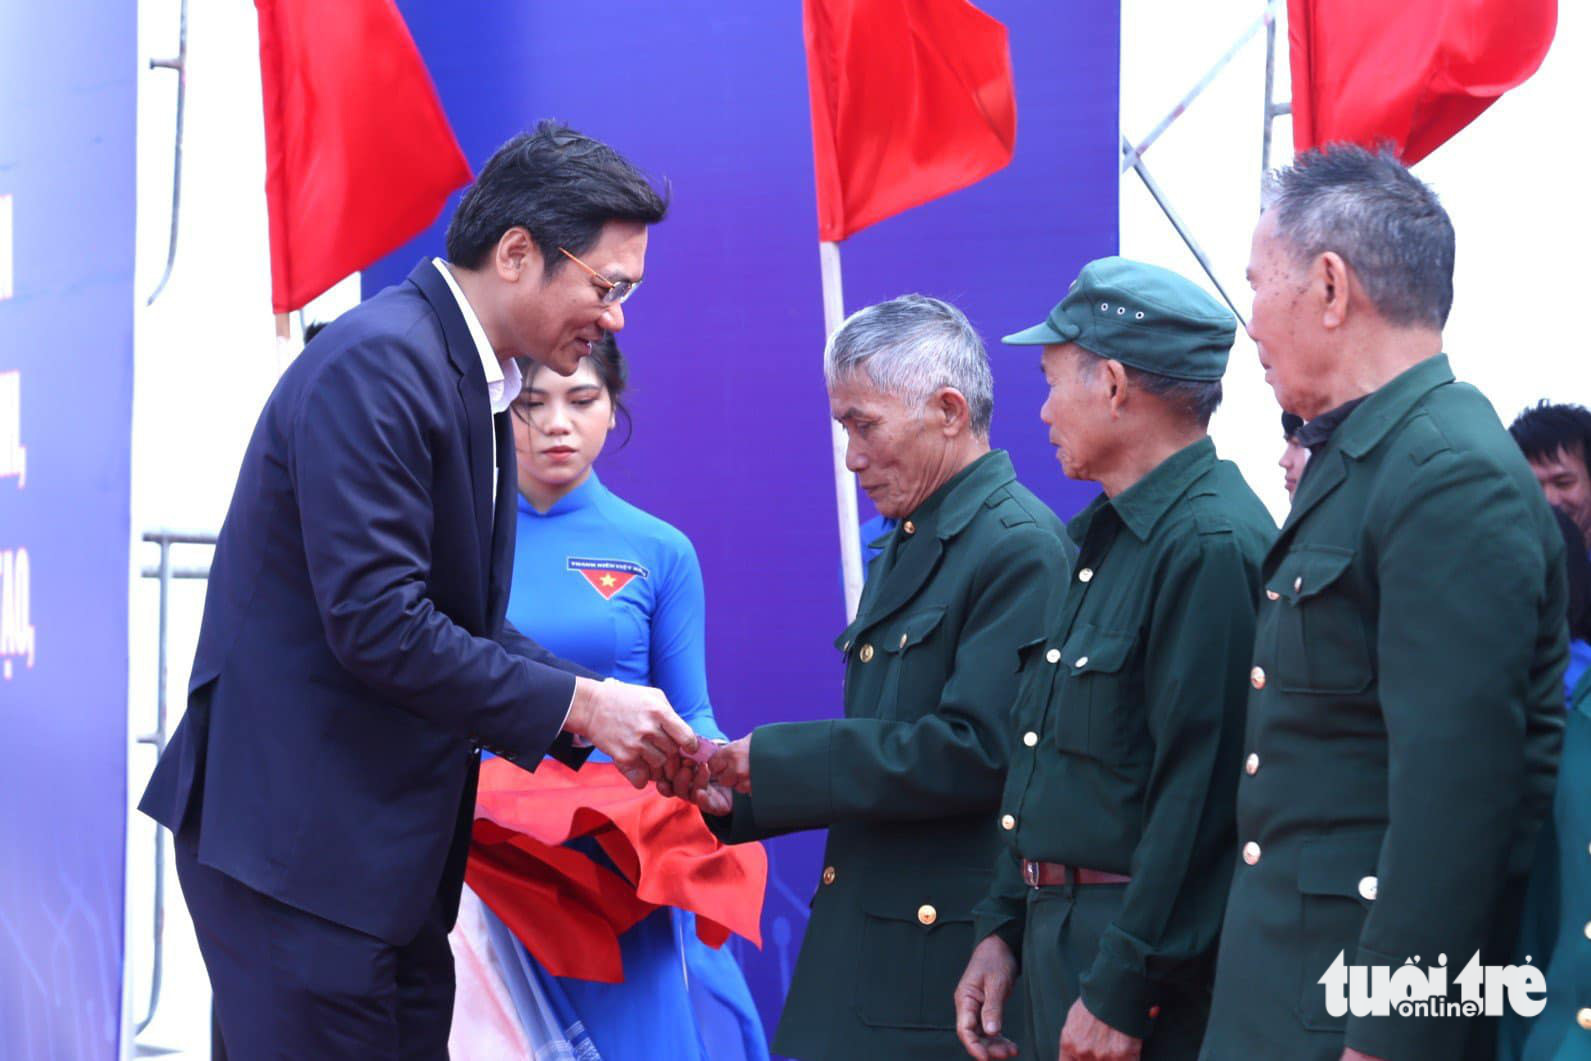 Phát động chuyển đổi số ở Nghệ An, tặng 200 xe đạp và học bổng cho học trò nghèo - Ảnh 2.